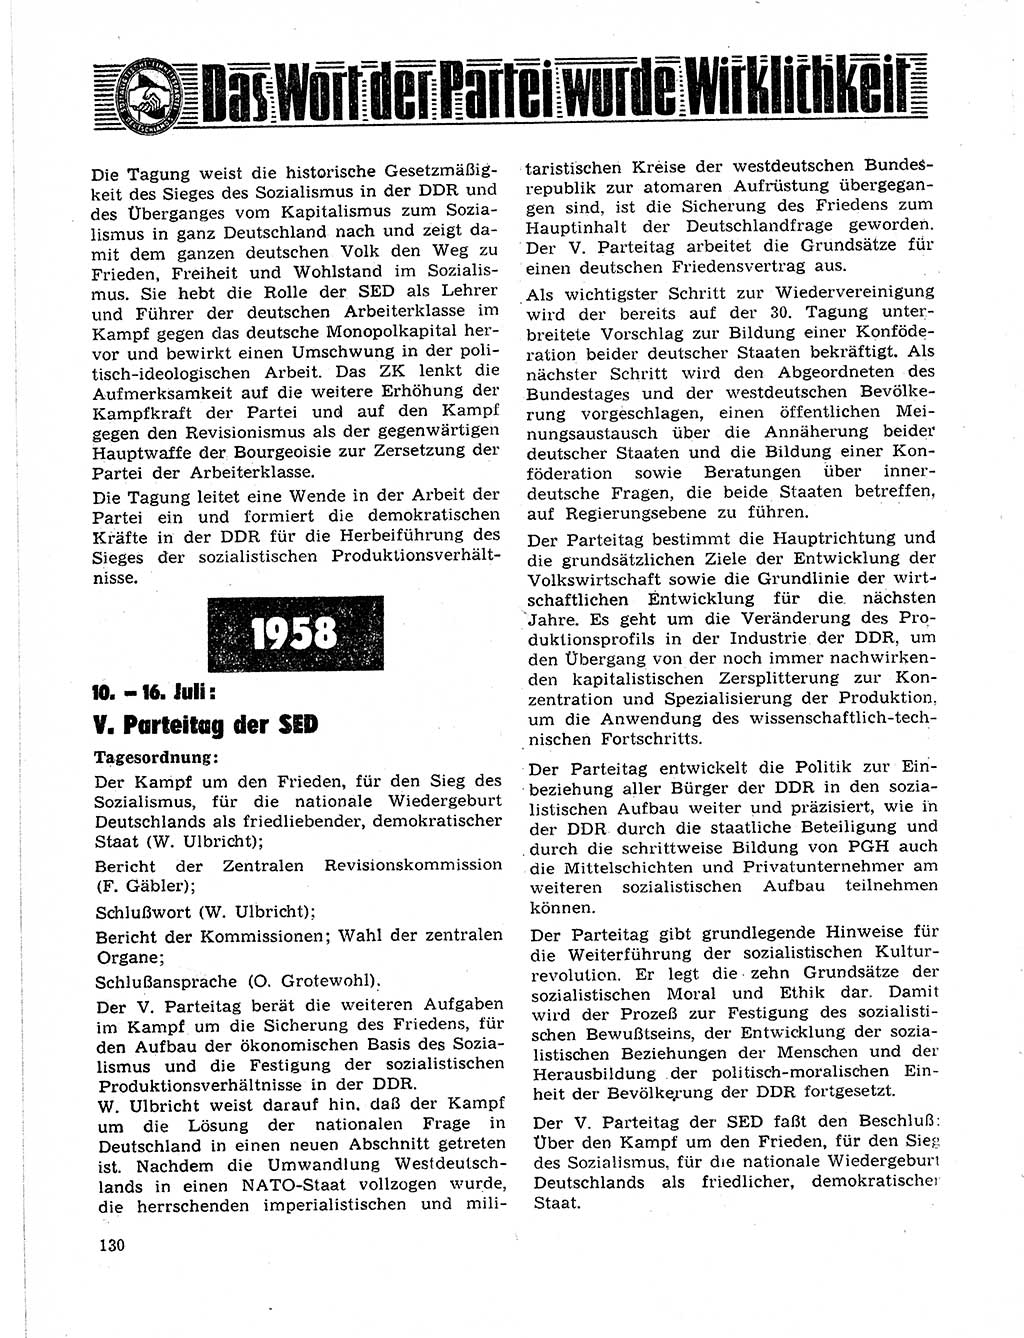 Neuer Weg (NW), Organ des Zentralkomitees (ZK) der SED (Sozialistische Einheitspartei Deutschlands) für Fragen des Parteilebens, 21. Jahrgang [Deutsche Demokratische Republik (DDR)] 1966, Seite 130 (NW ZK SED DDR 1966, S. 130)